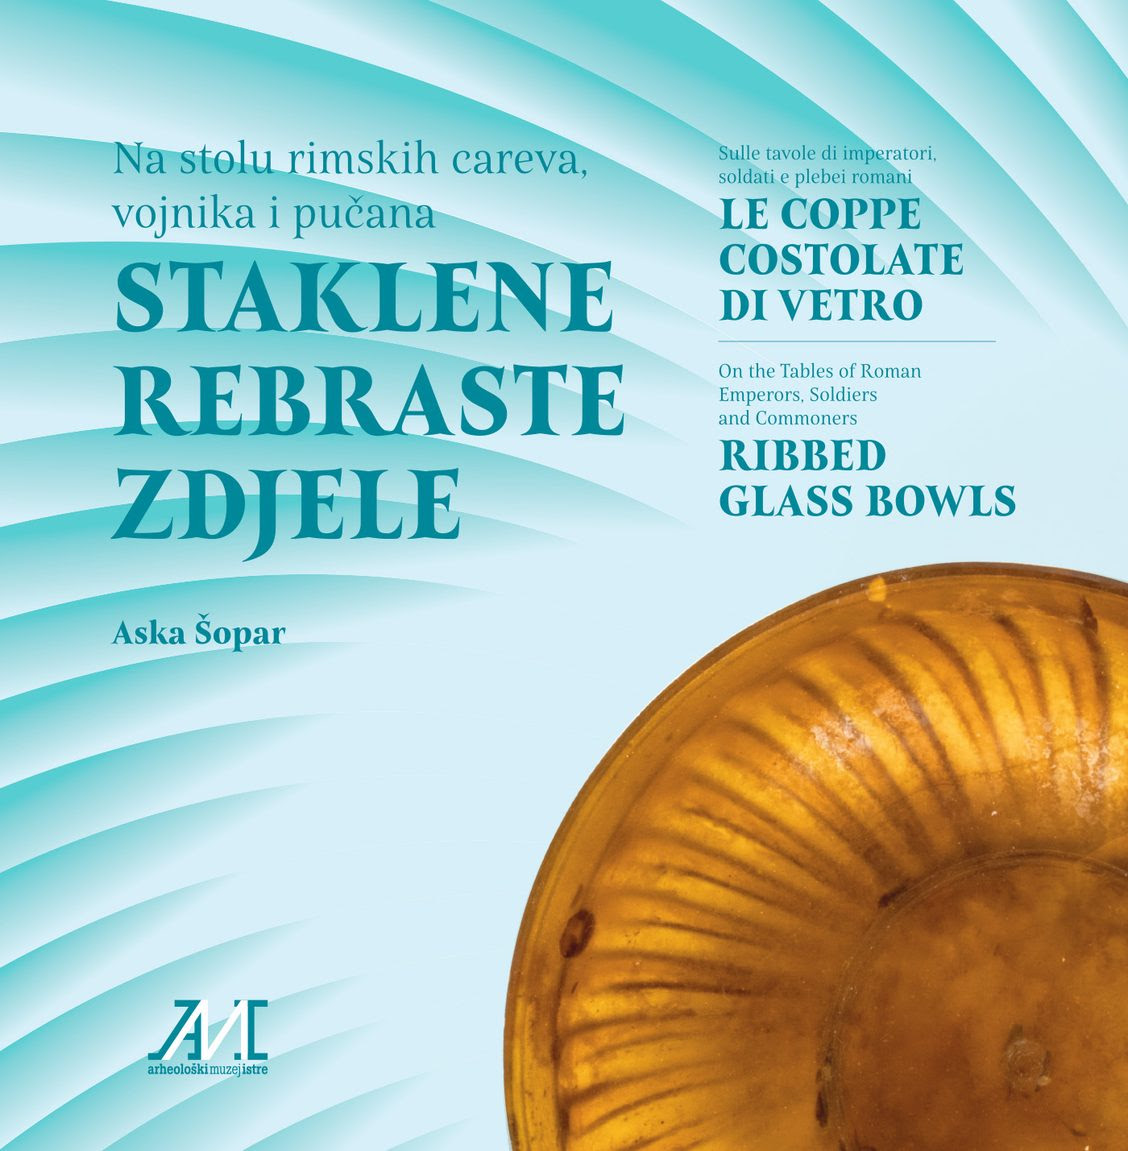 Šopar, Aska : Ribbed Glass Bowls – Le coppe costolate di vetro – Staklene Rebraste Zdjele